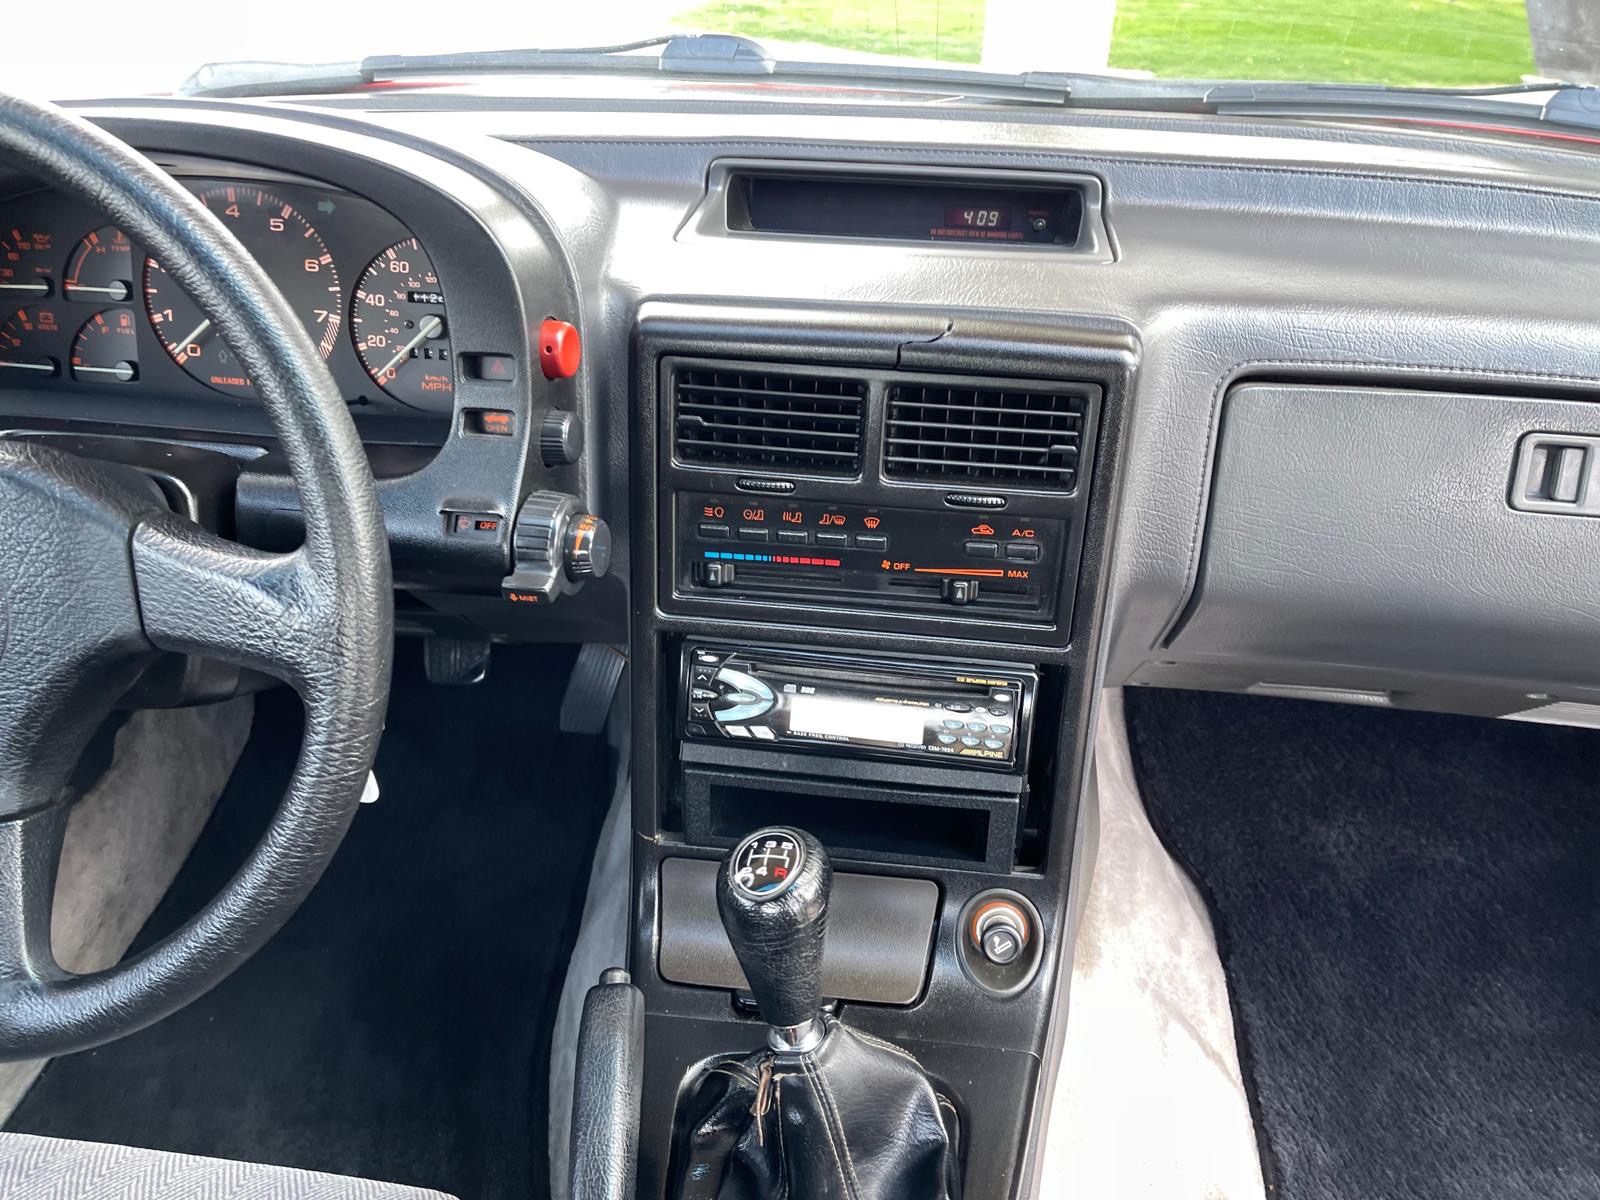 Used-1988-Mazda-RX-7